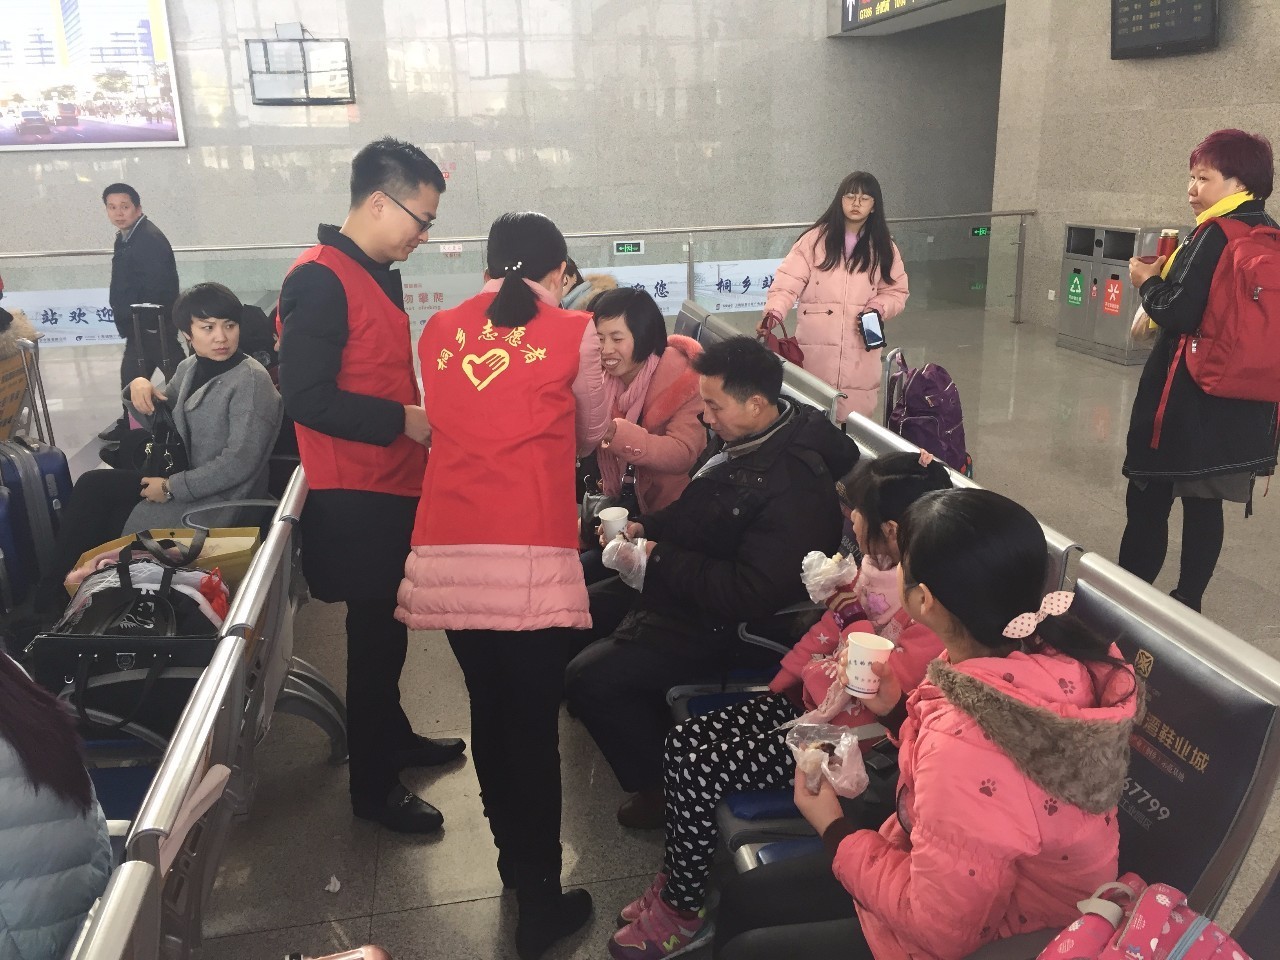 暖冬行动丨相约桐乡高铁站,志愿者伴您回家!